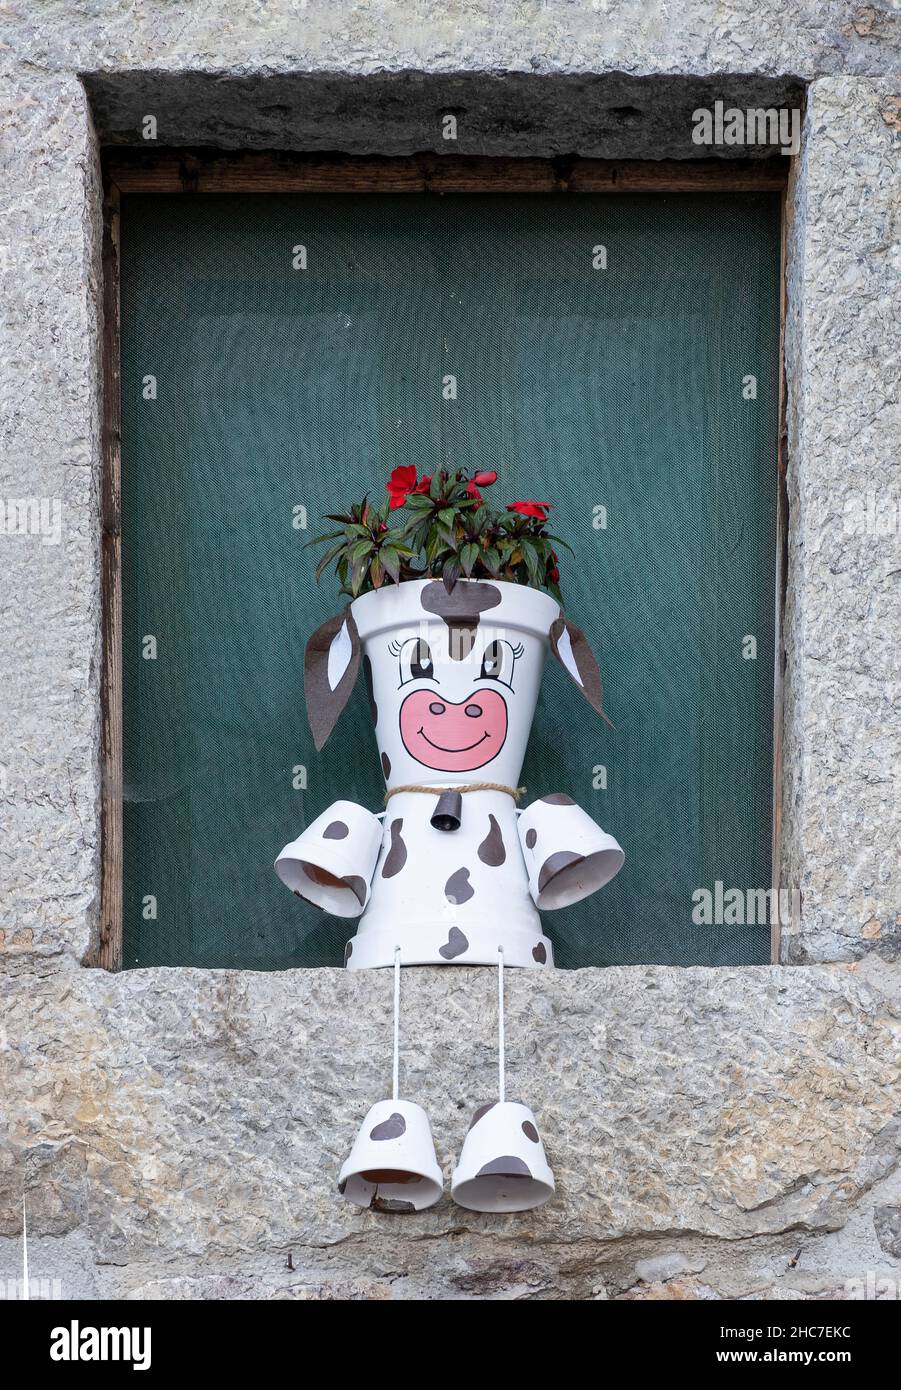 une jolie vache à lait faite de pots de fleurs avec des fleurs rouges dans la tête, assis sur le seuil de la fenêtre d'une maison rurale en pierre, verticale Banque D'Images